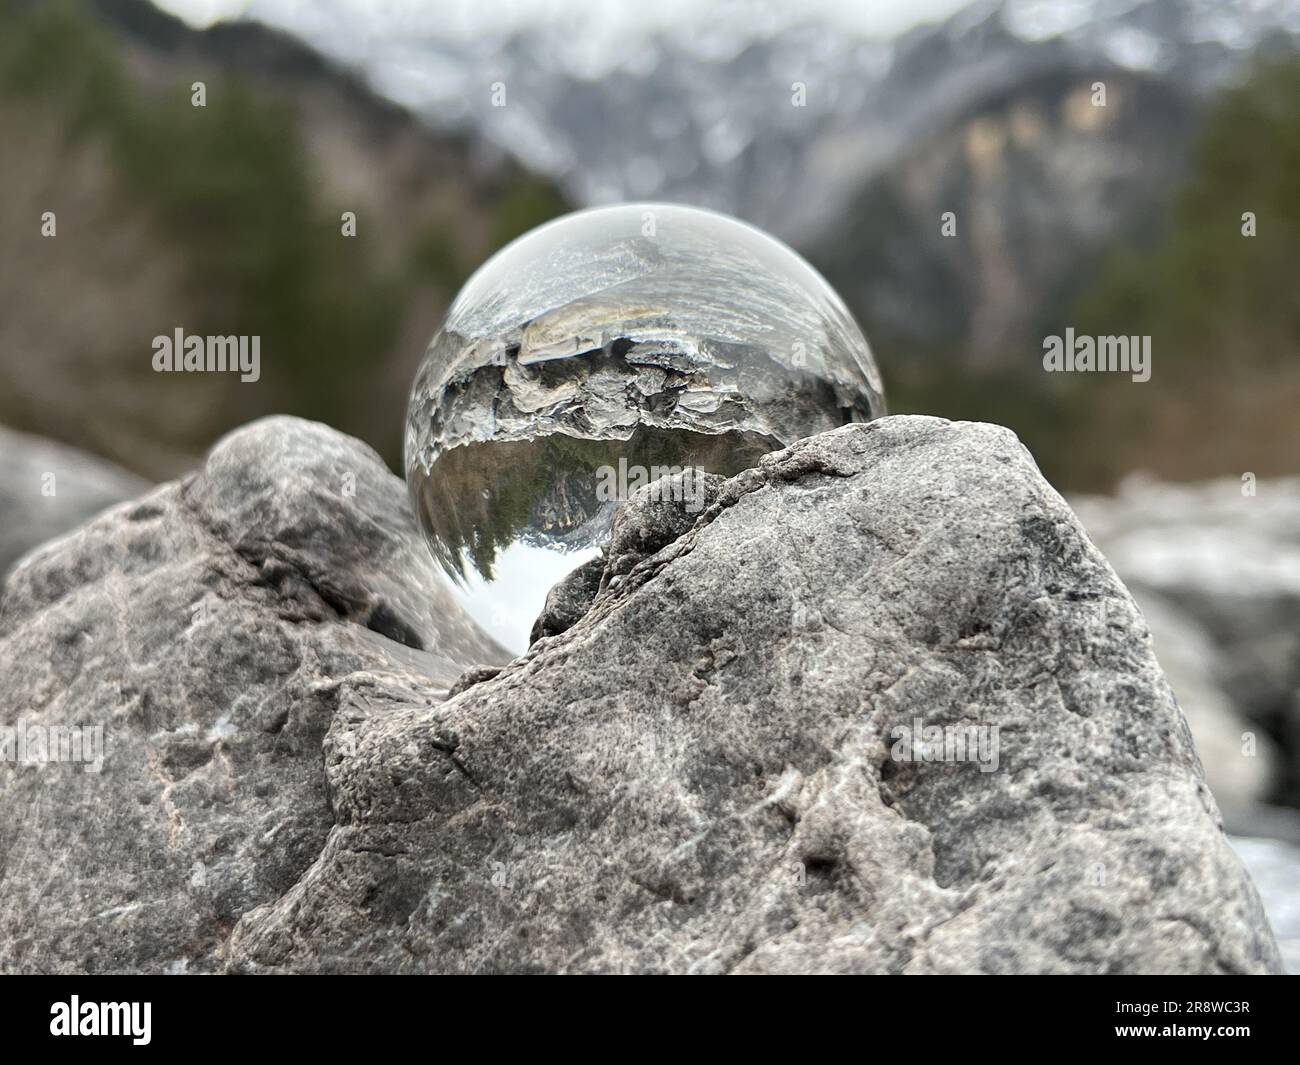 Lensball, boule de cristal sur des rochers, reflétant une crique alpine, en arrière-plan la célèbre montagne Zimba de Montafon (Vorarlberg, Autriche). Banque D'Images